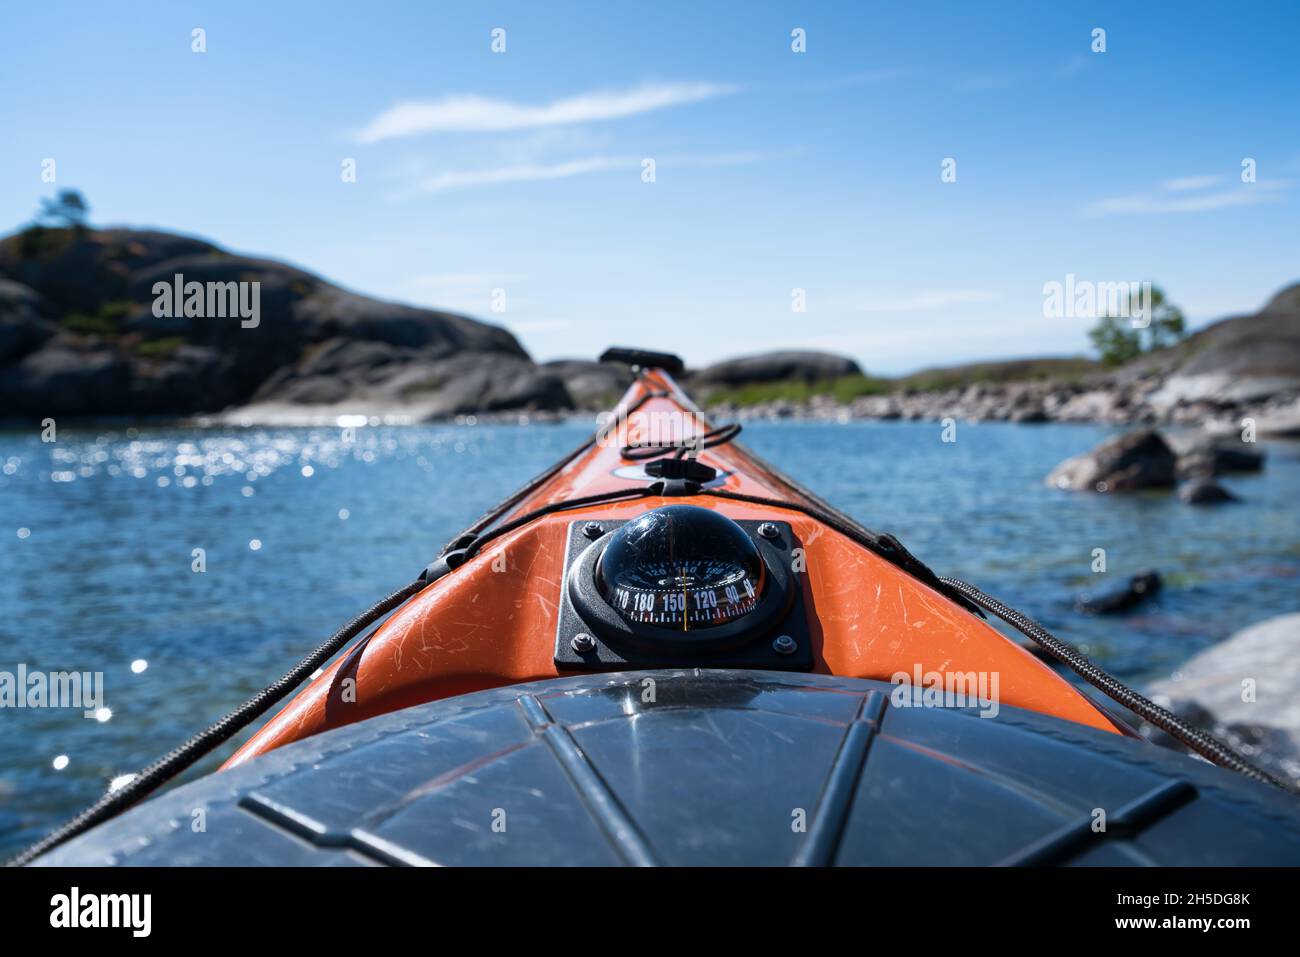 Kayaking at Ryssklobben island, Inkoo, Finland Stock Photo